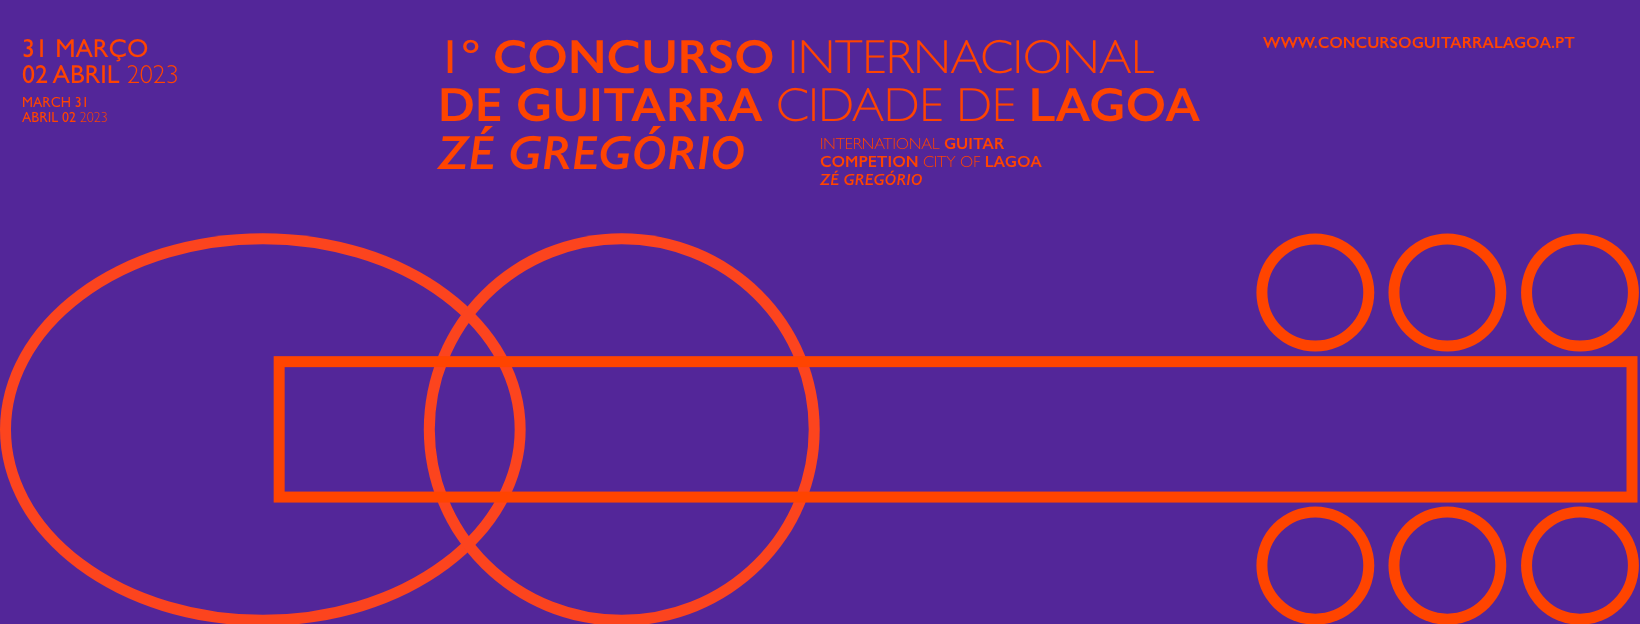 Concurso Internacional de Guitarra “Cidade de Lagoa”